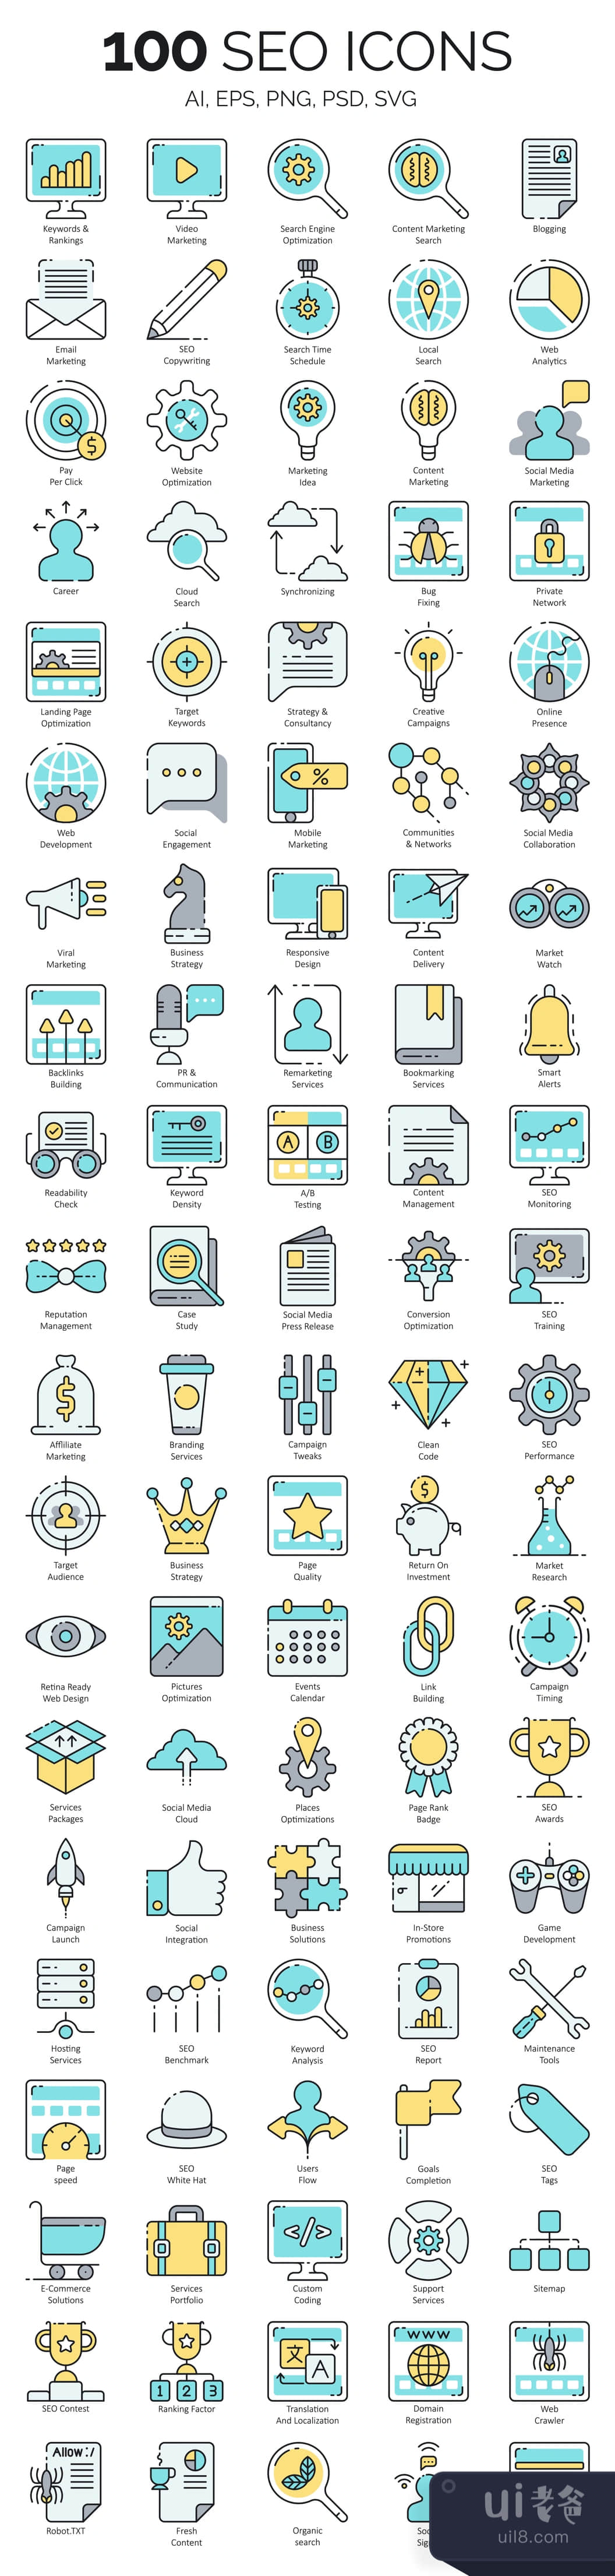 100个SEO和网络营销图标 (100 SEO & Internet Marketing Icons插图